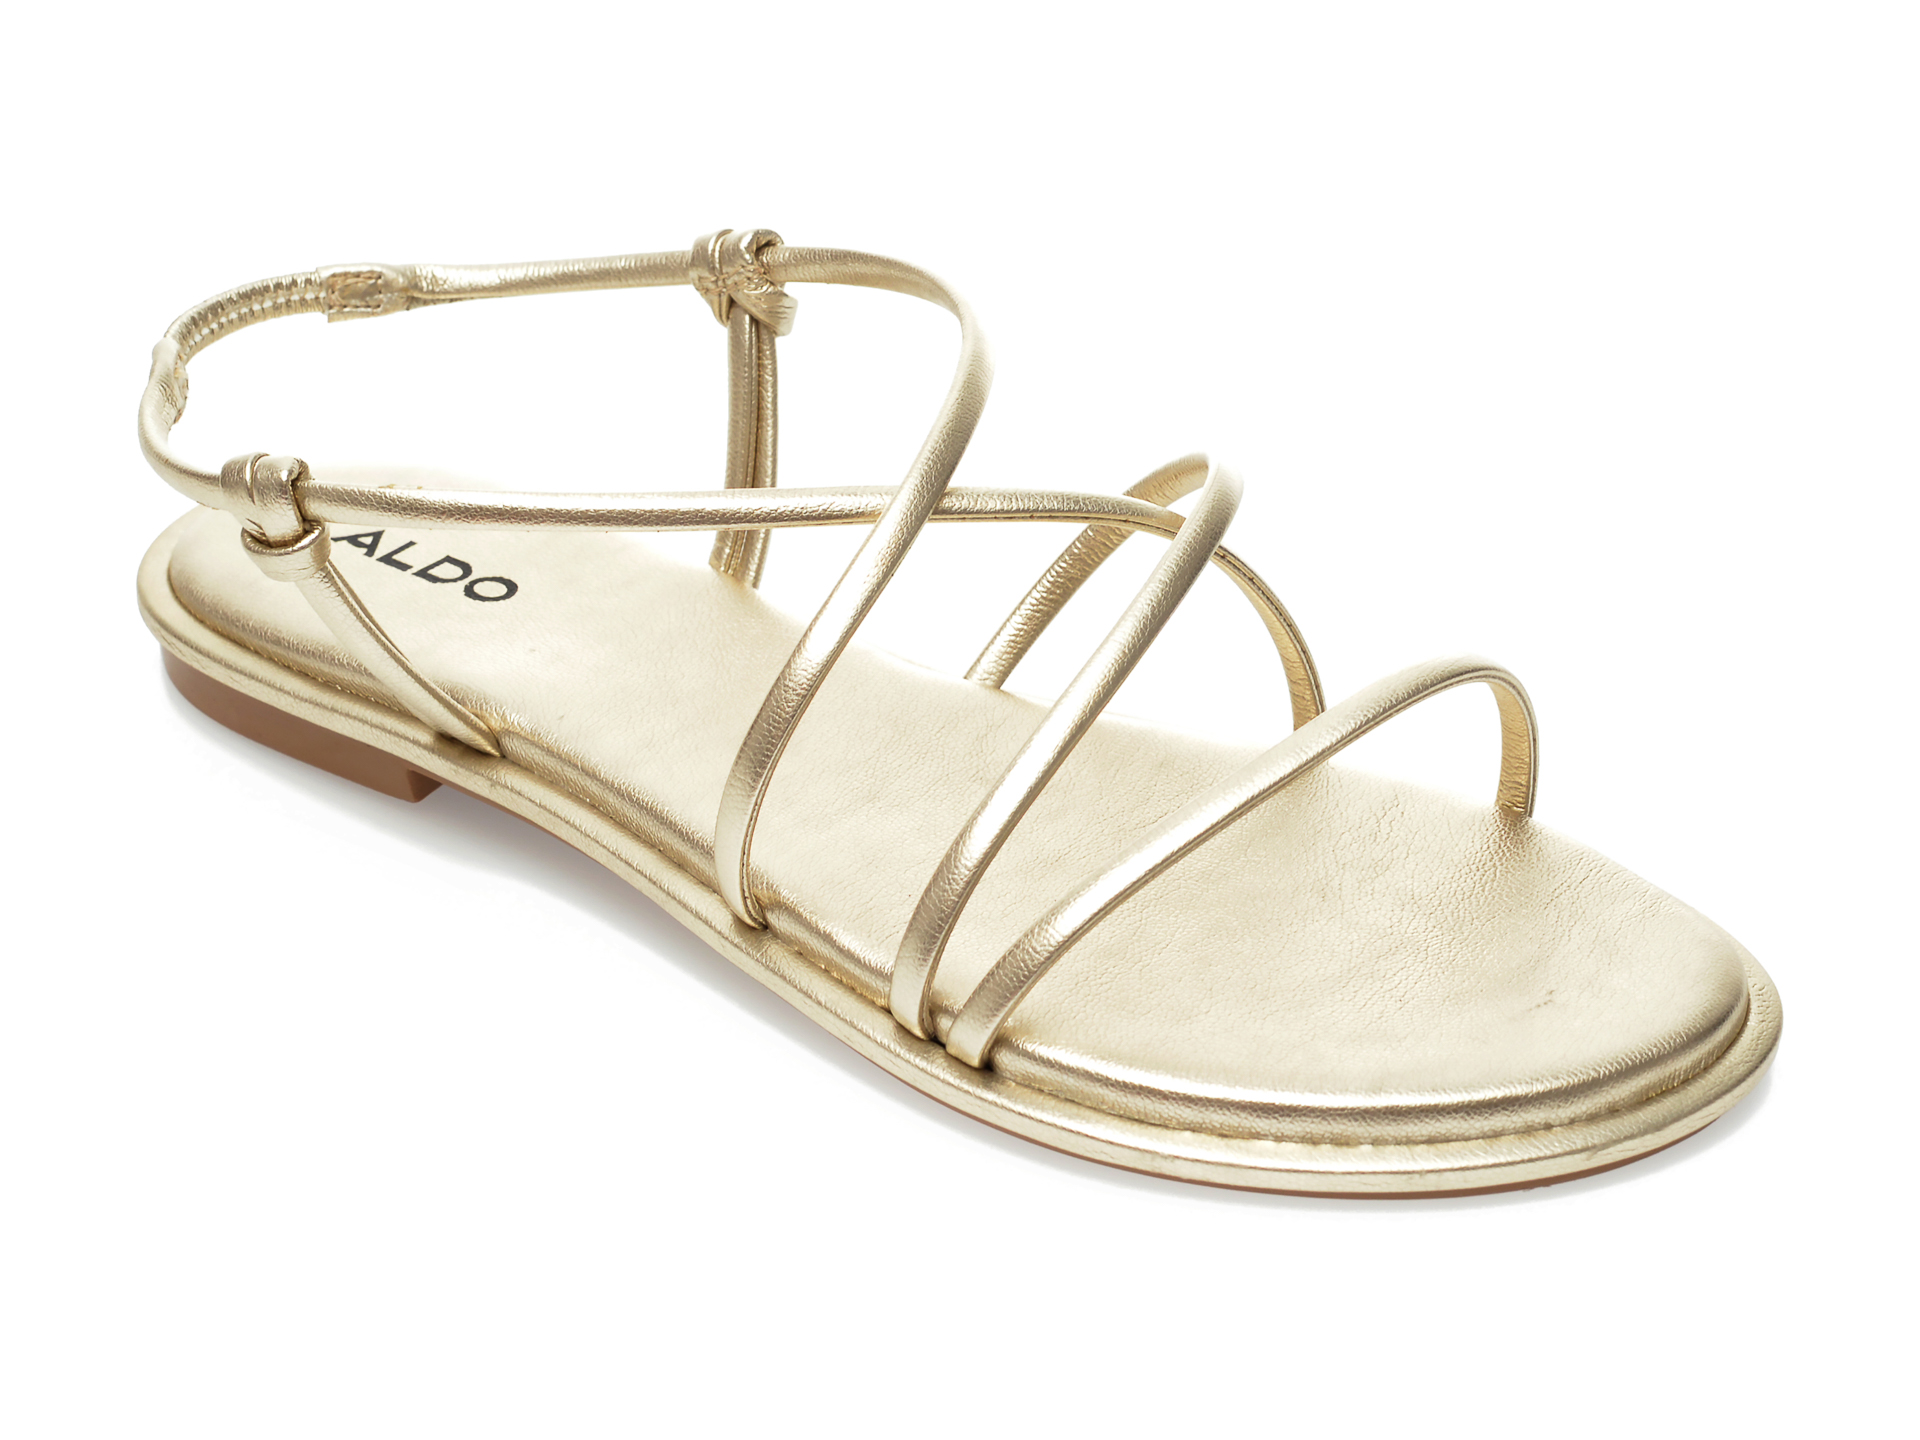 Sandale ALDO aurii, Kuerten710, din piele ecologica Aldo